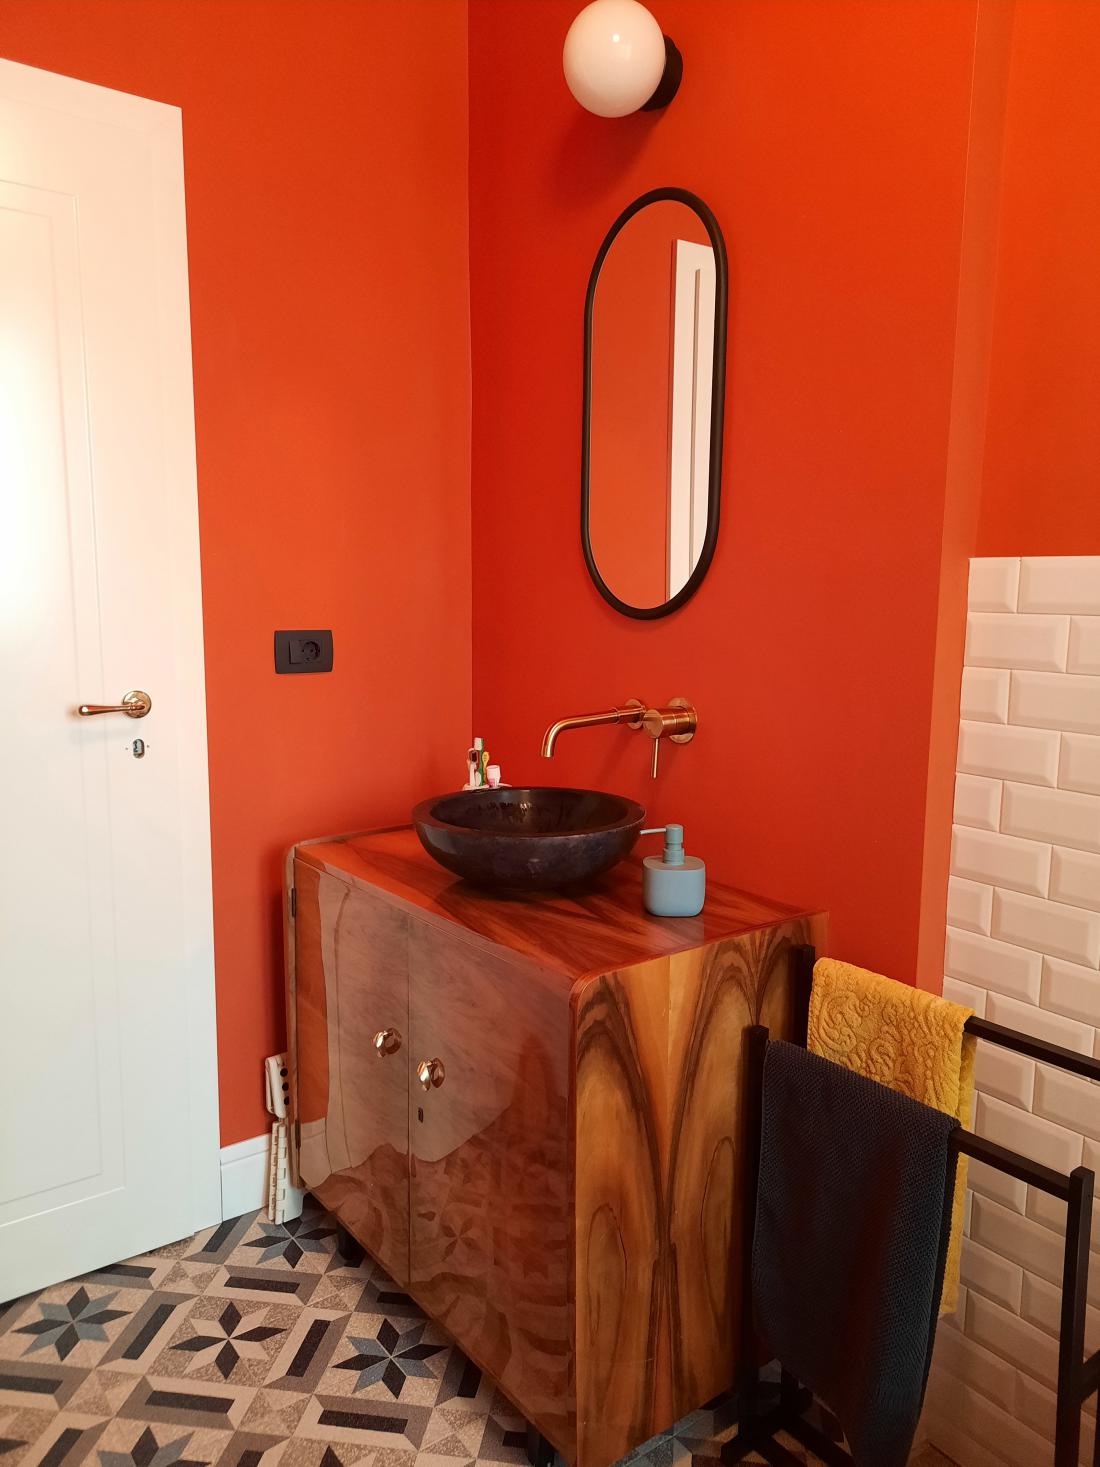 Živih barv se ne boji, v kopalnici kraljuje oranžna.